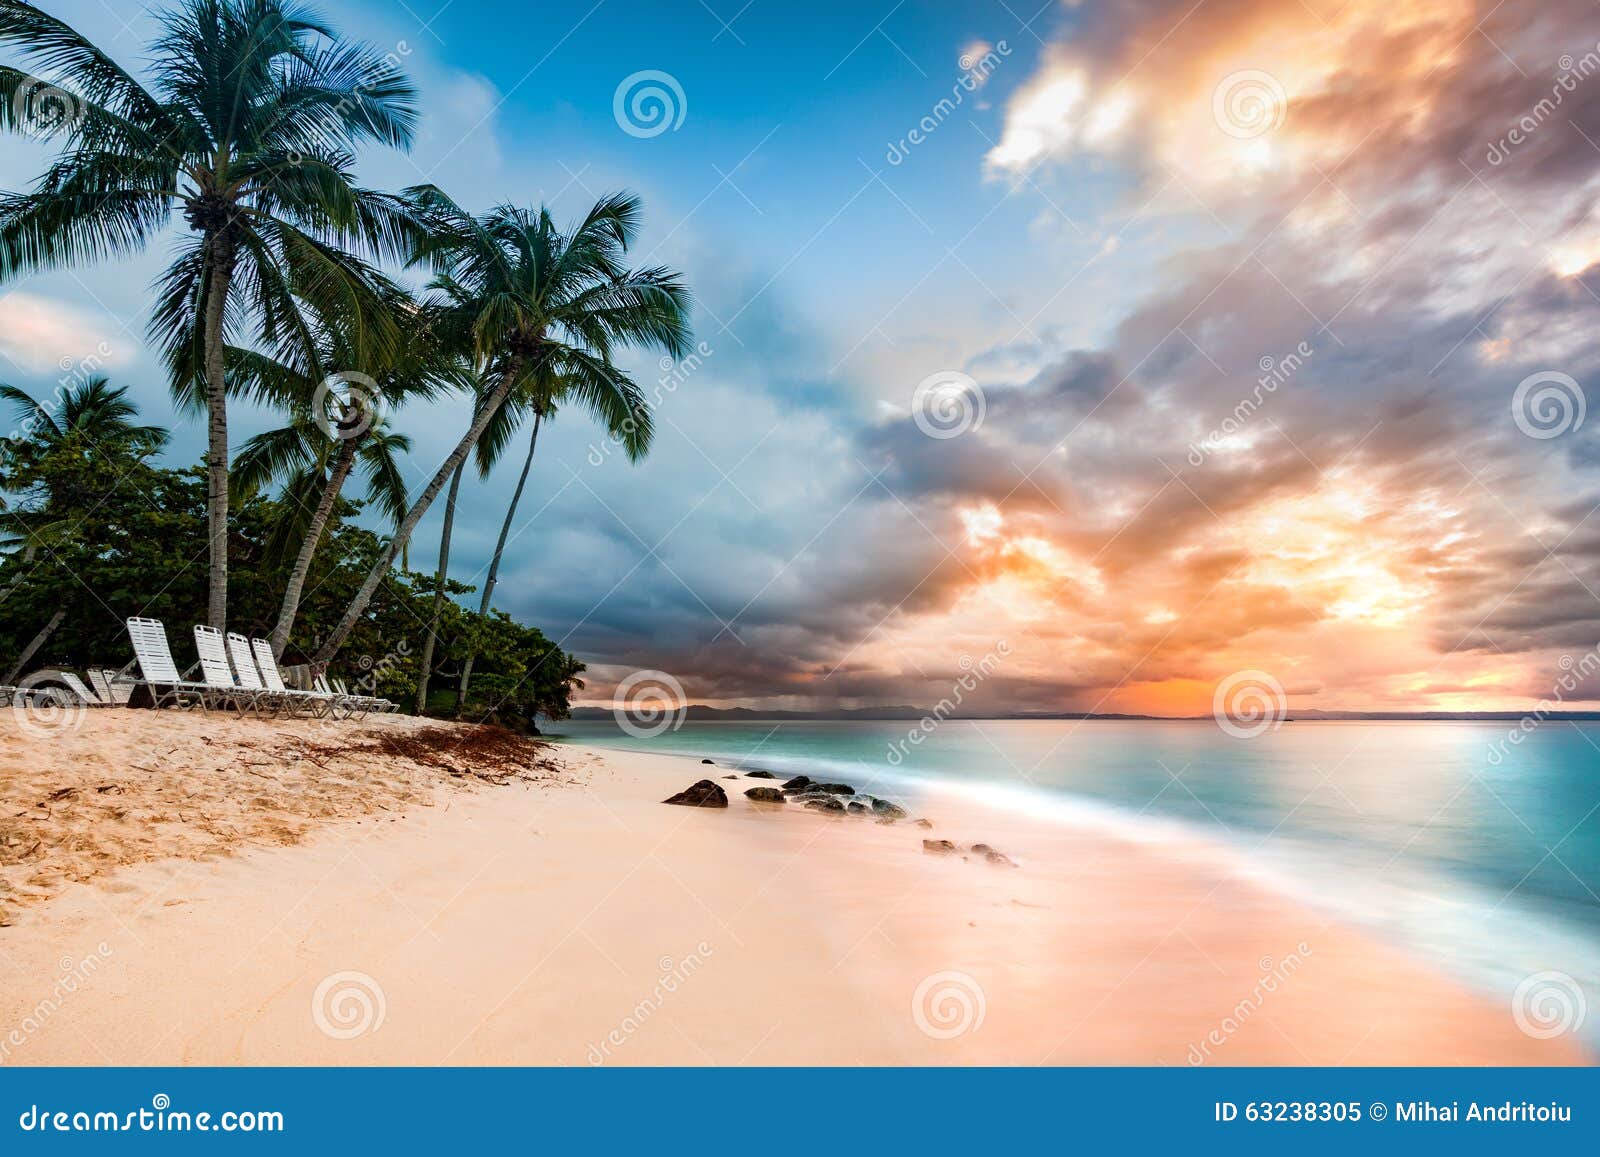 public beach in cayo levantado, dominican republic